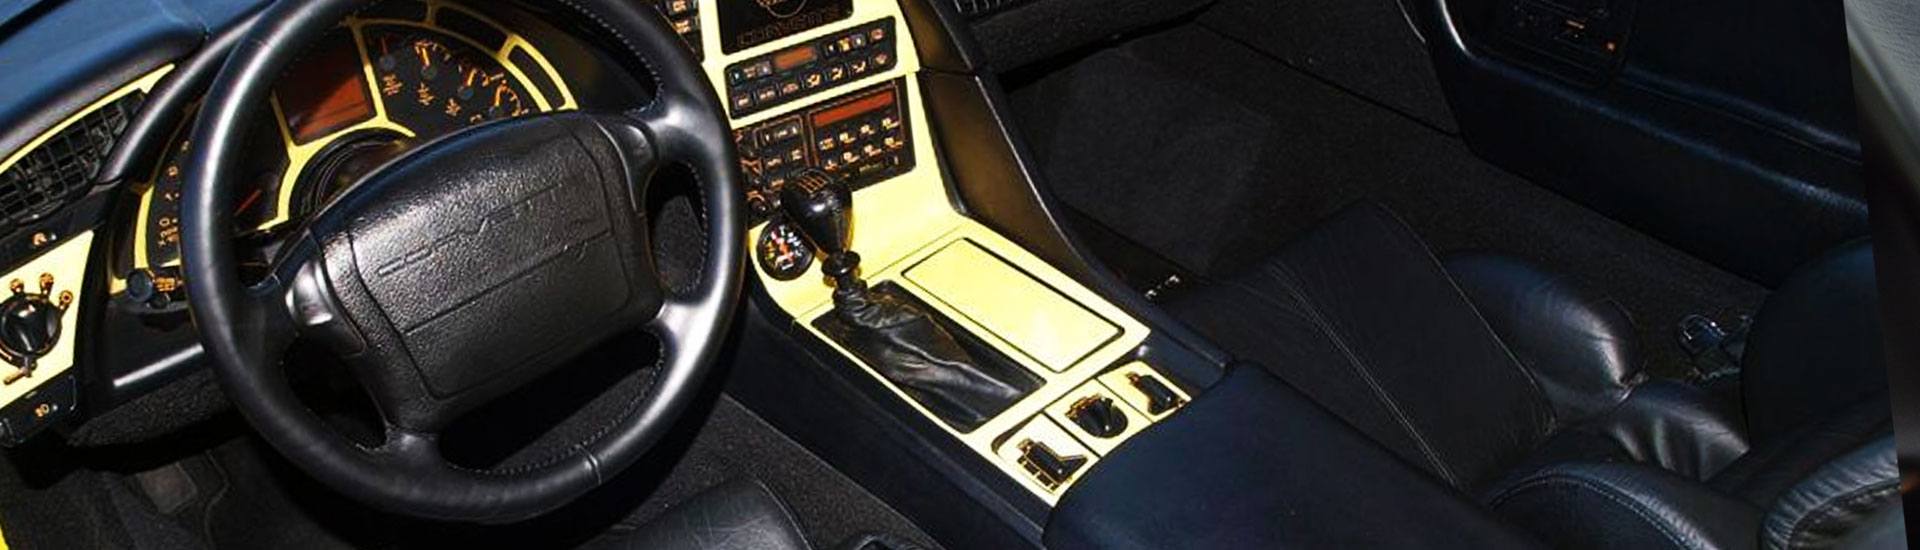 1993 Chevrolet Corvette Dash Kits